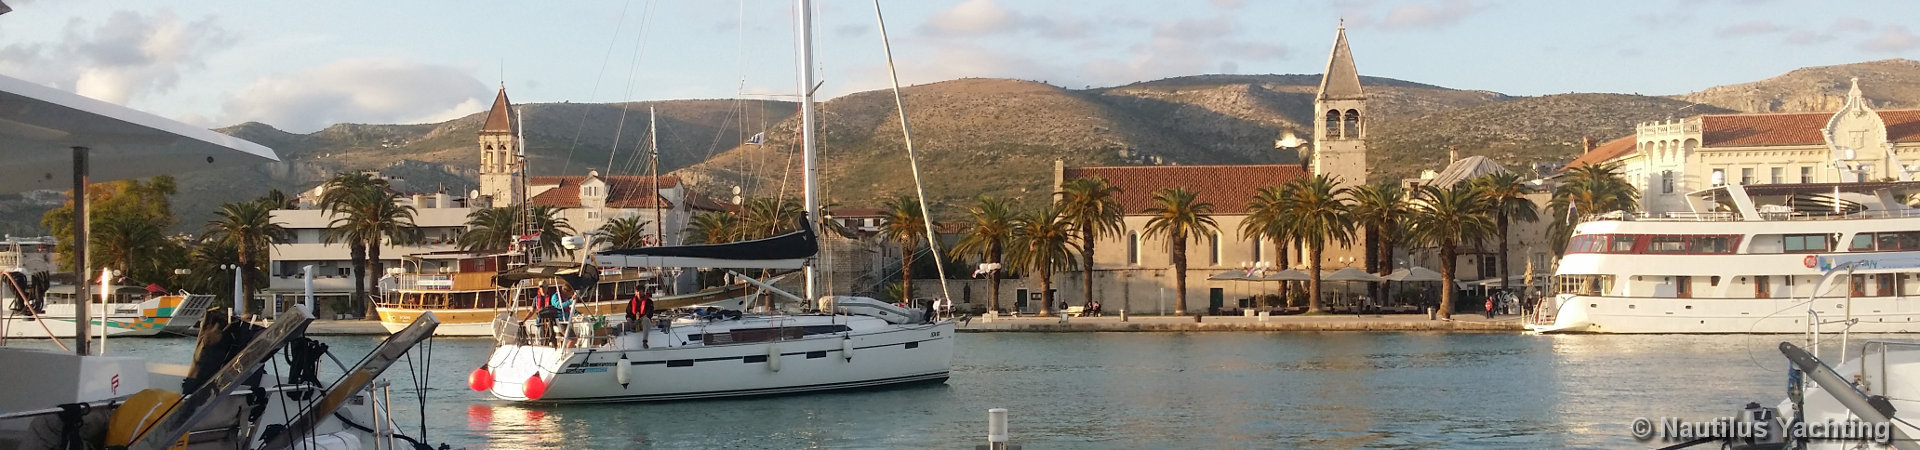 Noleggio barche a vela Croazia - Yacht Charter